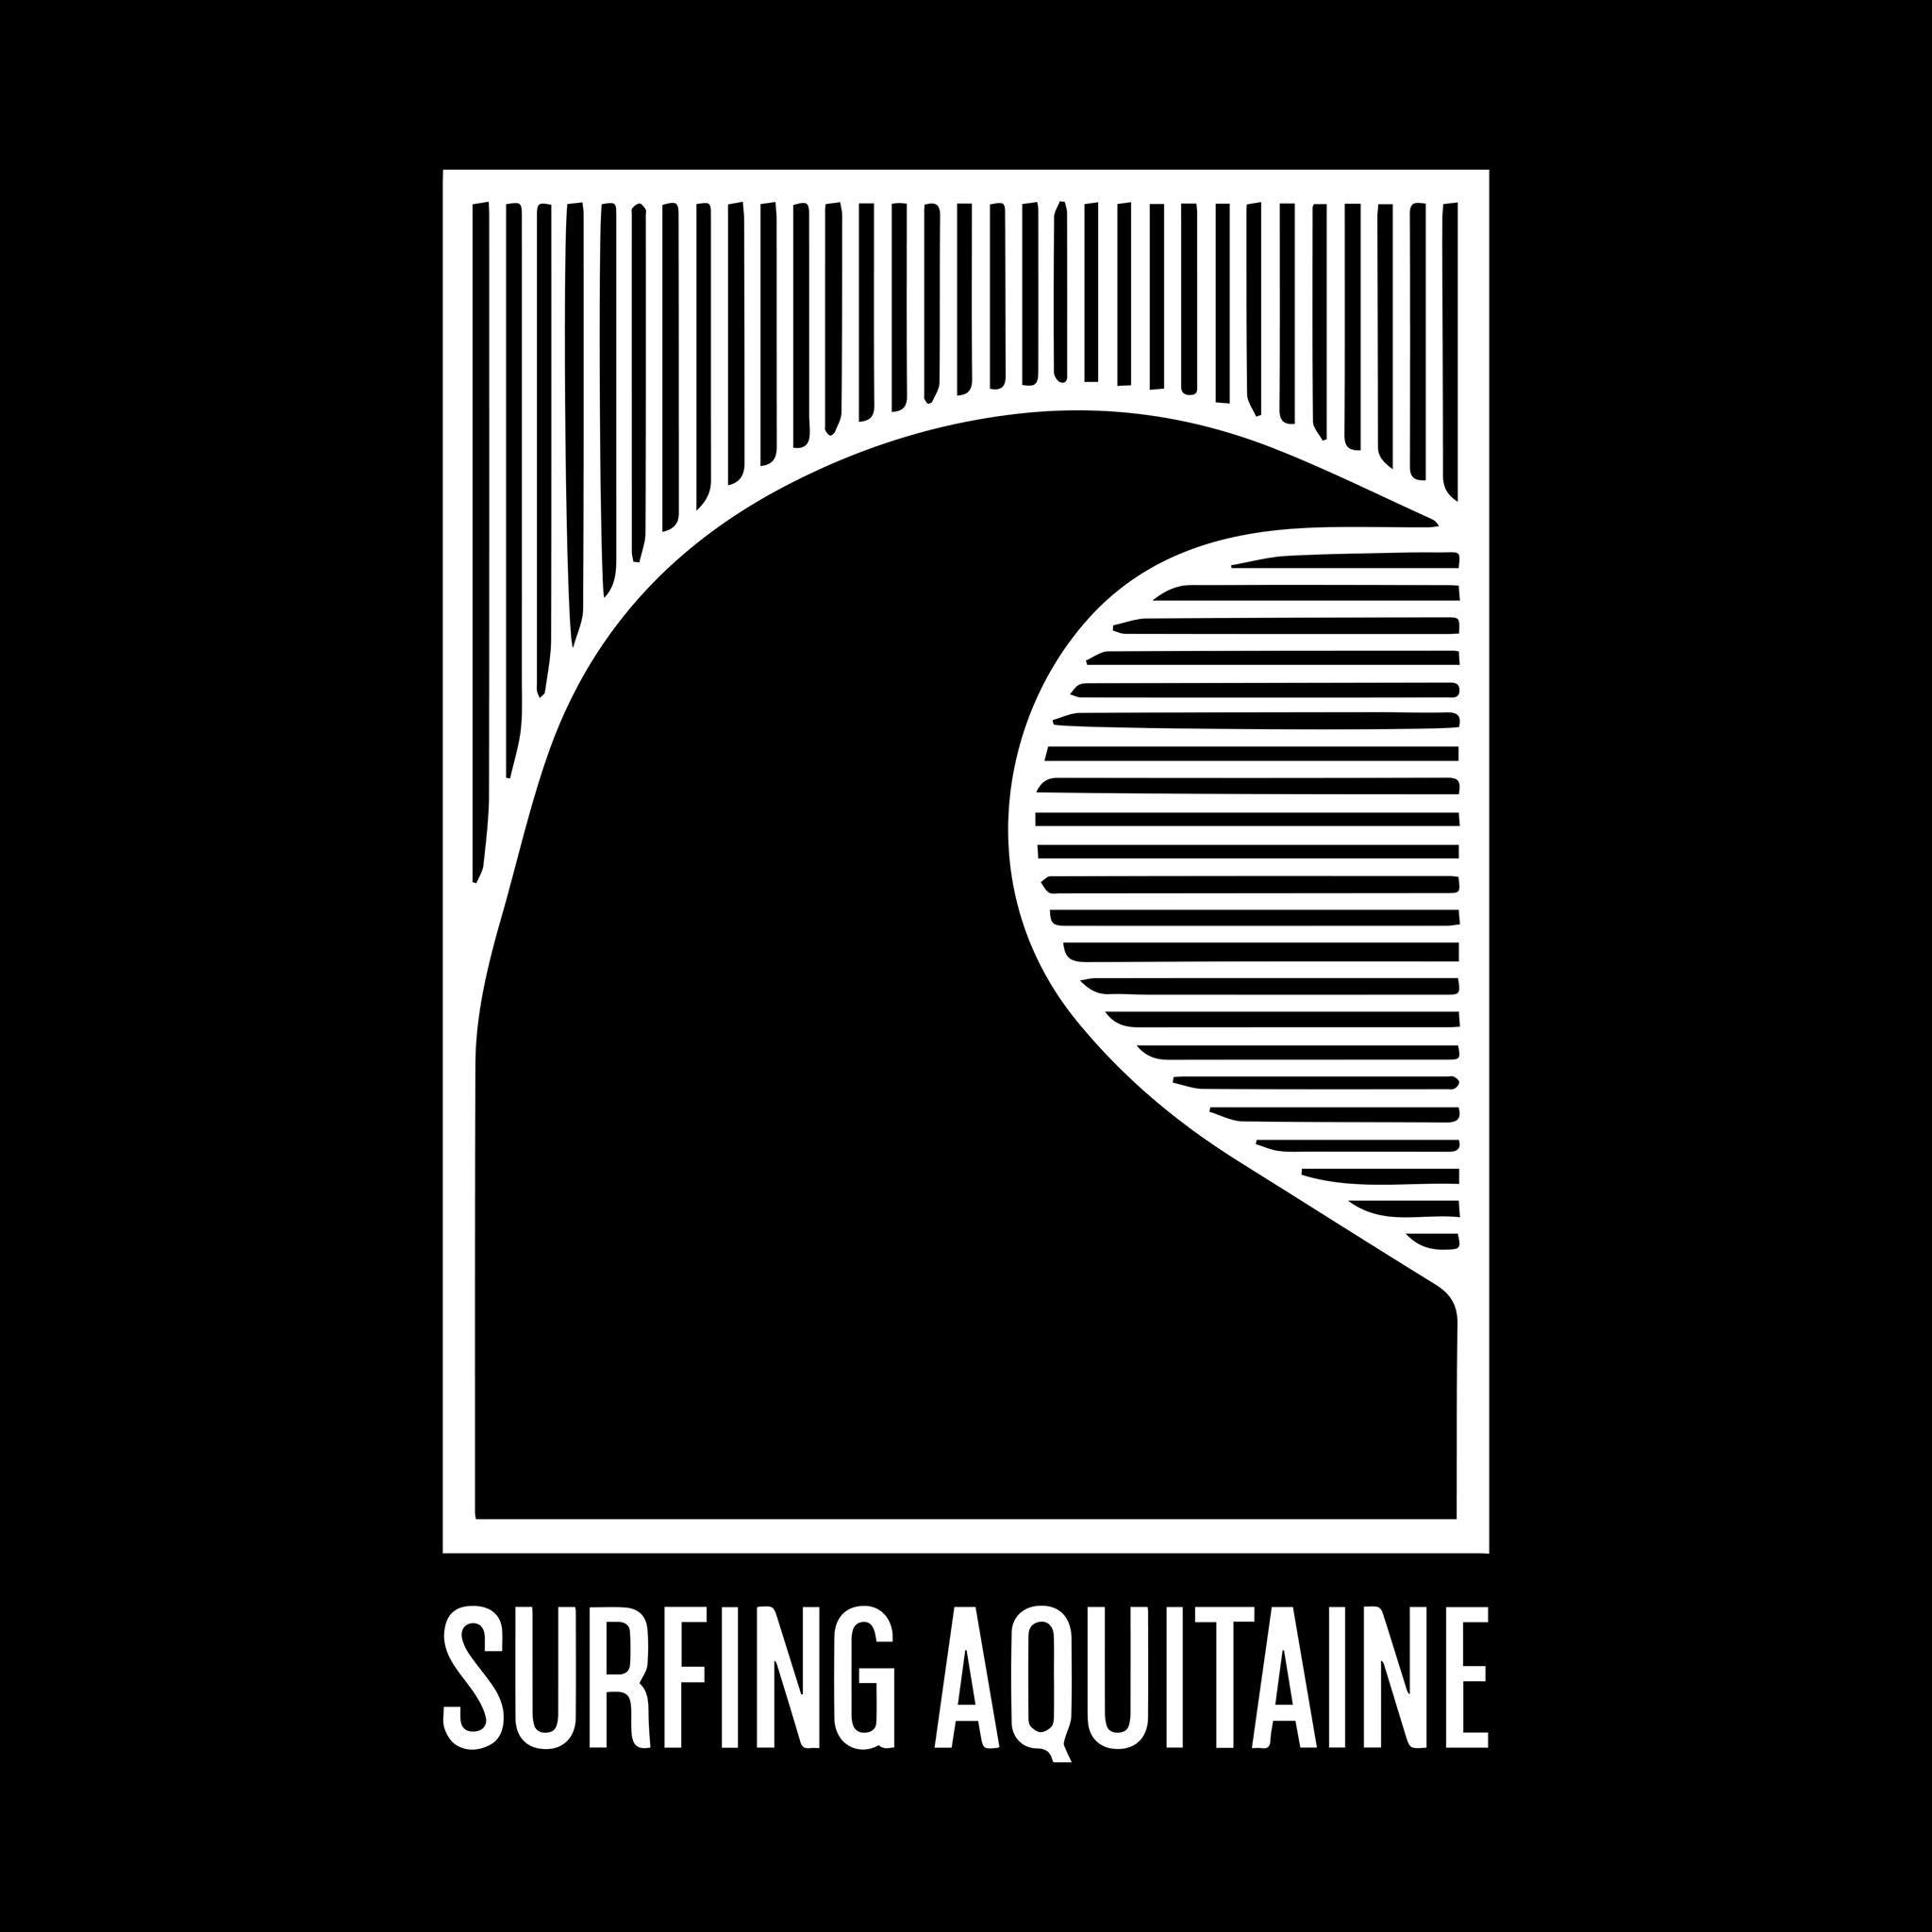 Ligue de Surf Aquitaine